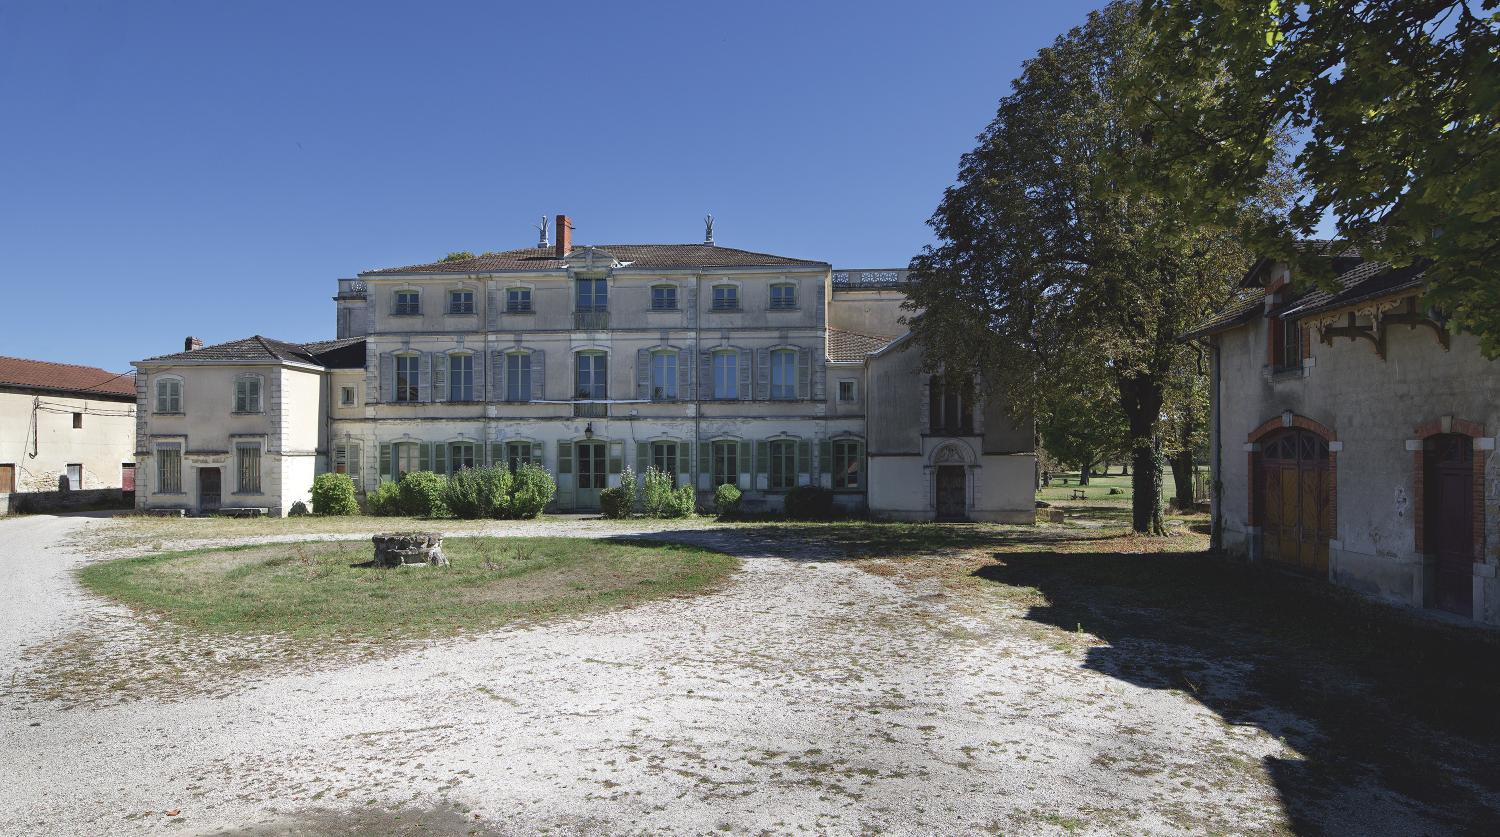 Château, puis colonie de vacances et préventorium, maison familiale d'Antoine de Saint-Exupéry